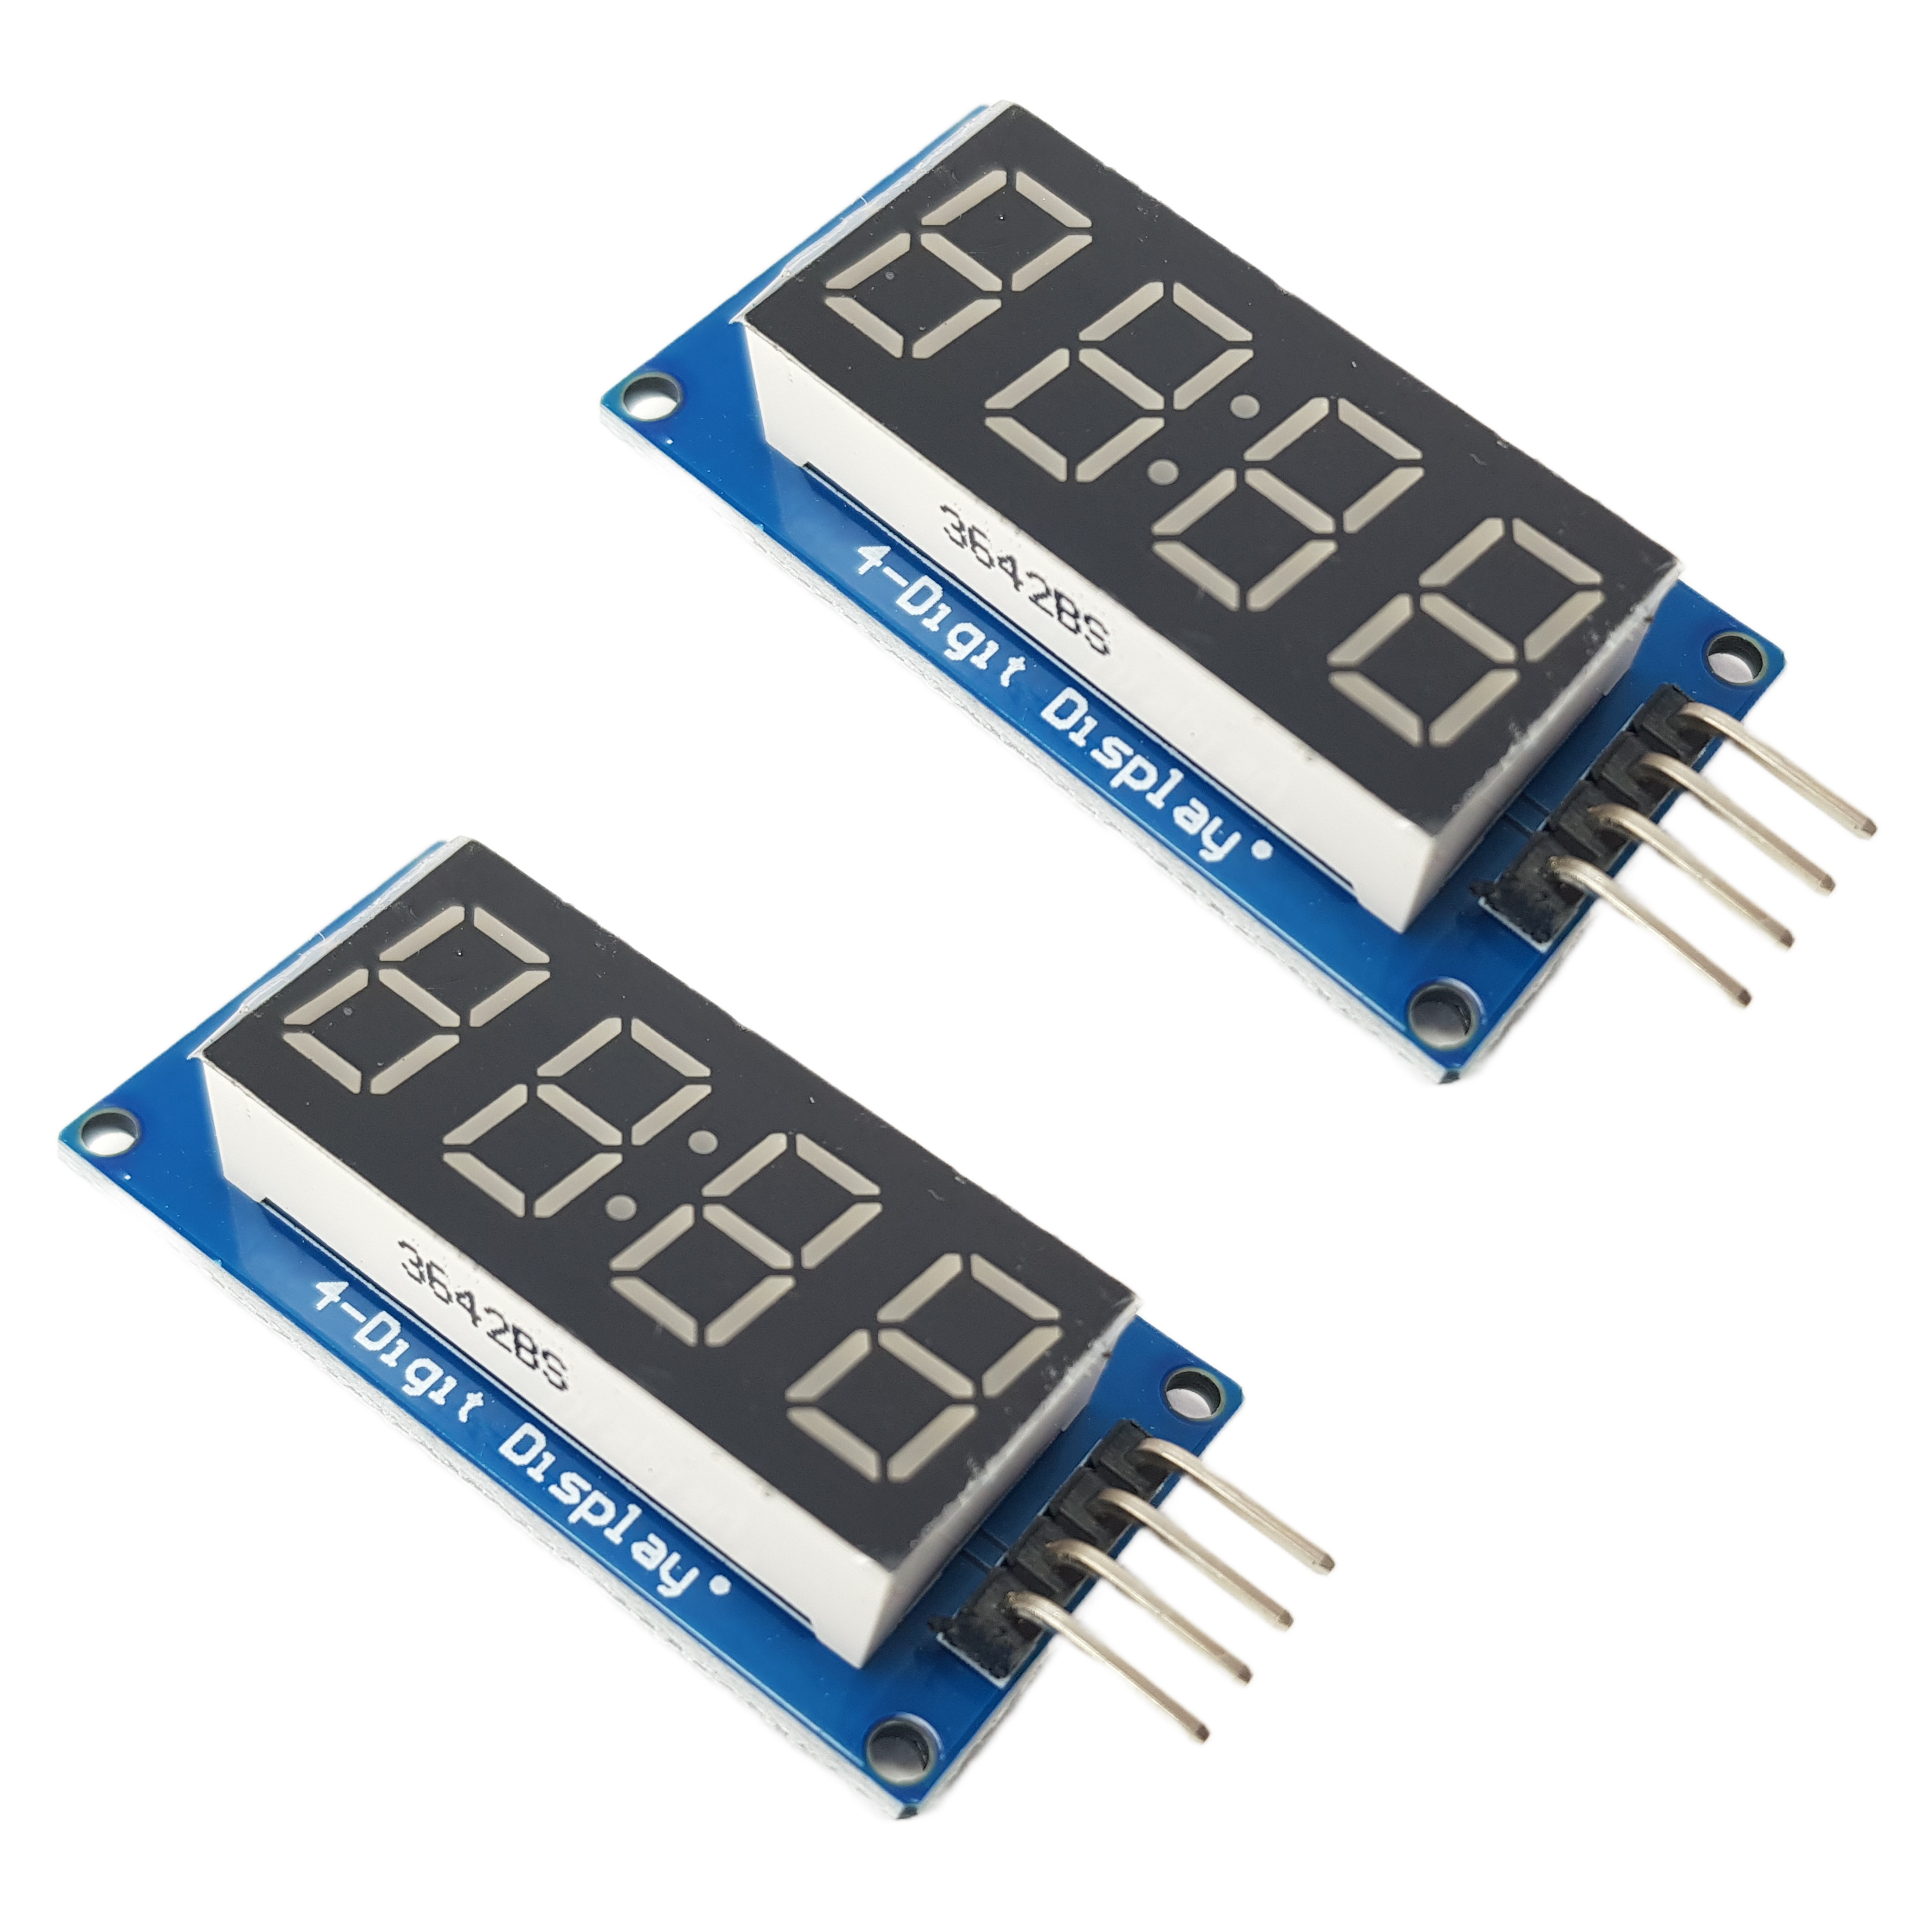 4-digit 7-segment Display LED TM1637 with colon for Arduino, ESP32, ESP8266, Raspberry Pi, 2 pieces